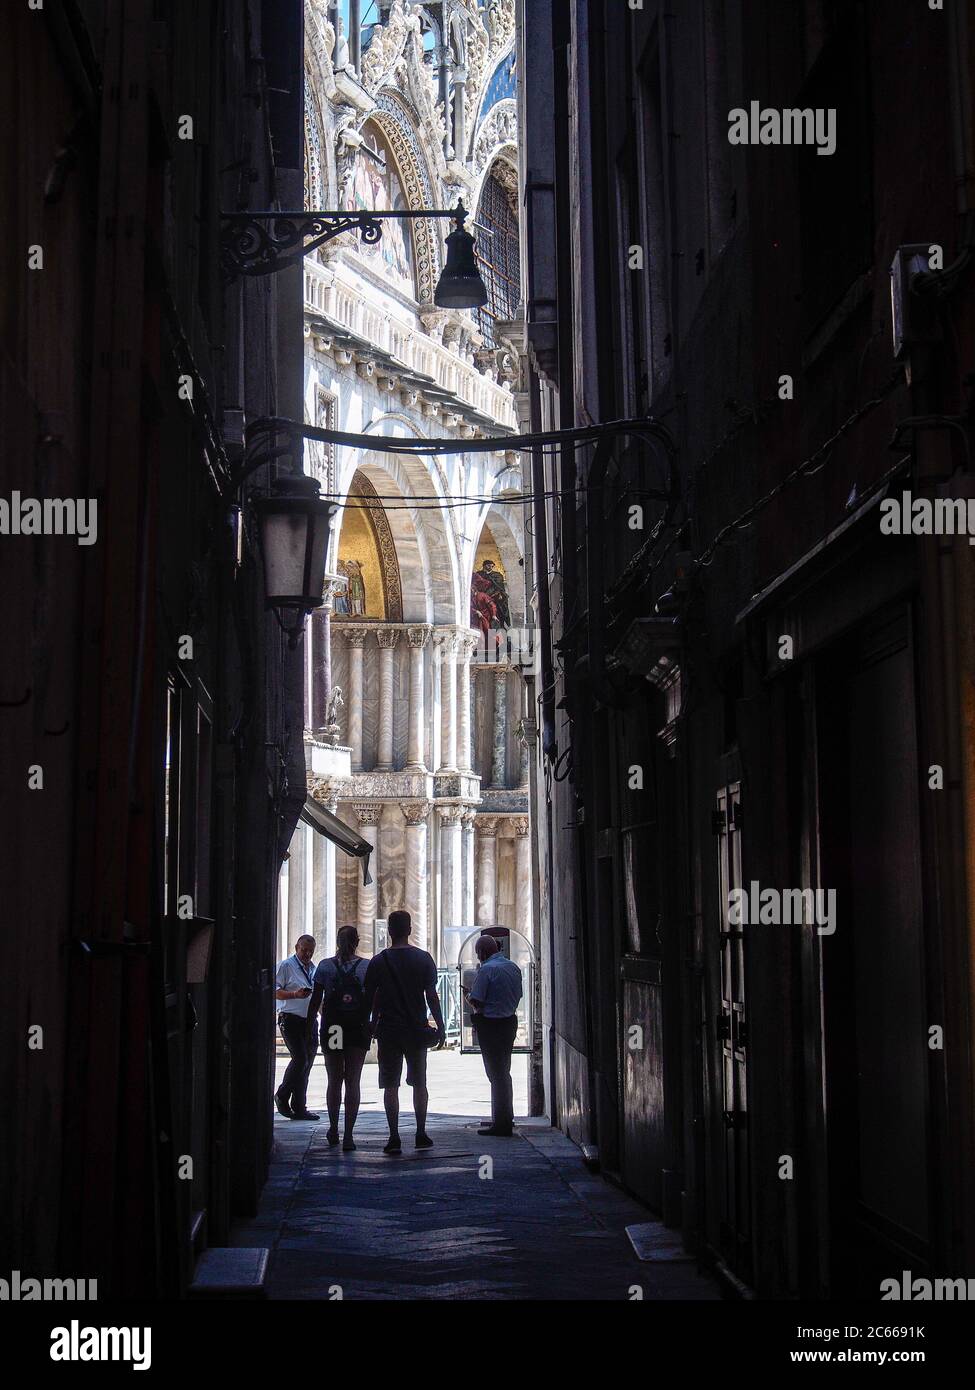 San Marco, Venise, Italie - juillet 2020. Peu de touristes sont de retour dans Venise déserte après le confinement de covid-19, les célèbres bars et magasins fermés. Banque D'Images